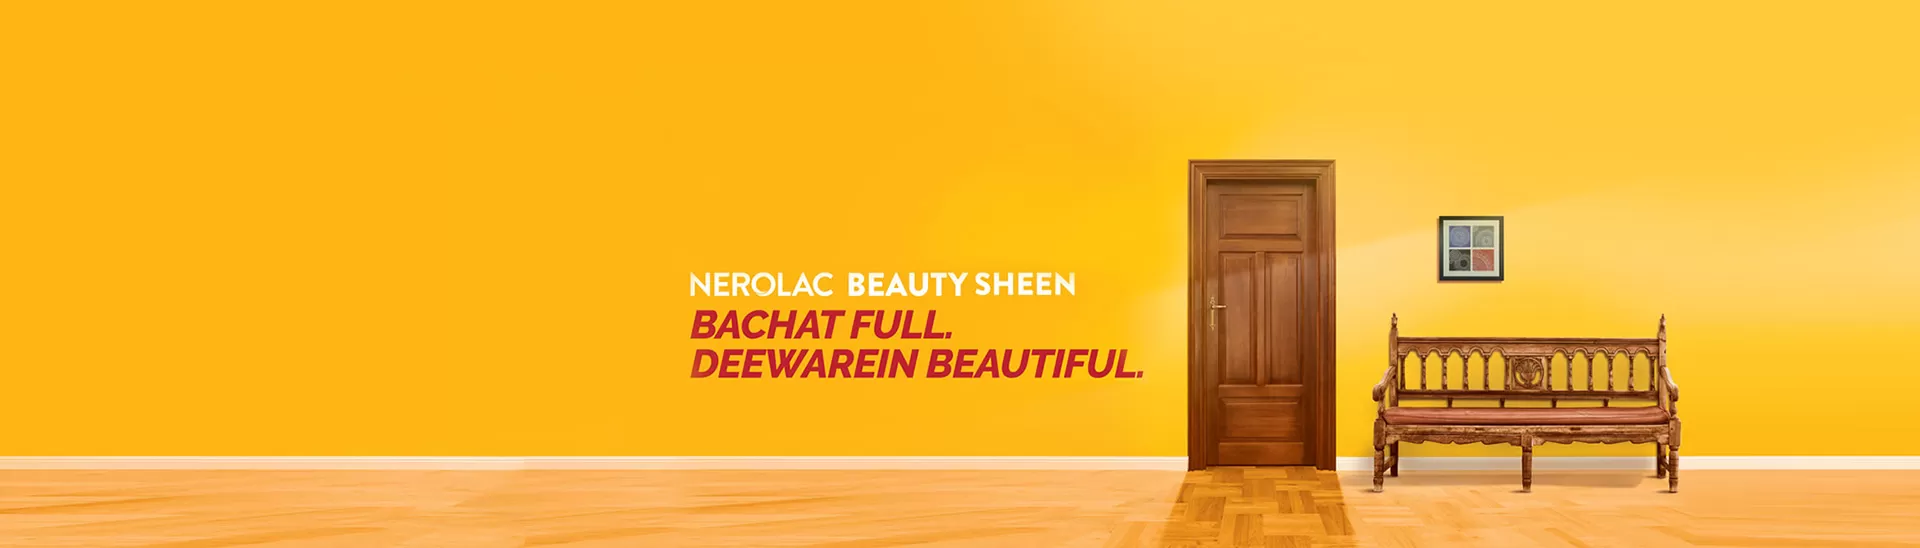 Nerolac Beauty Sheen